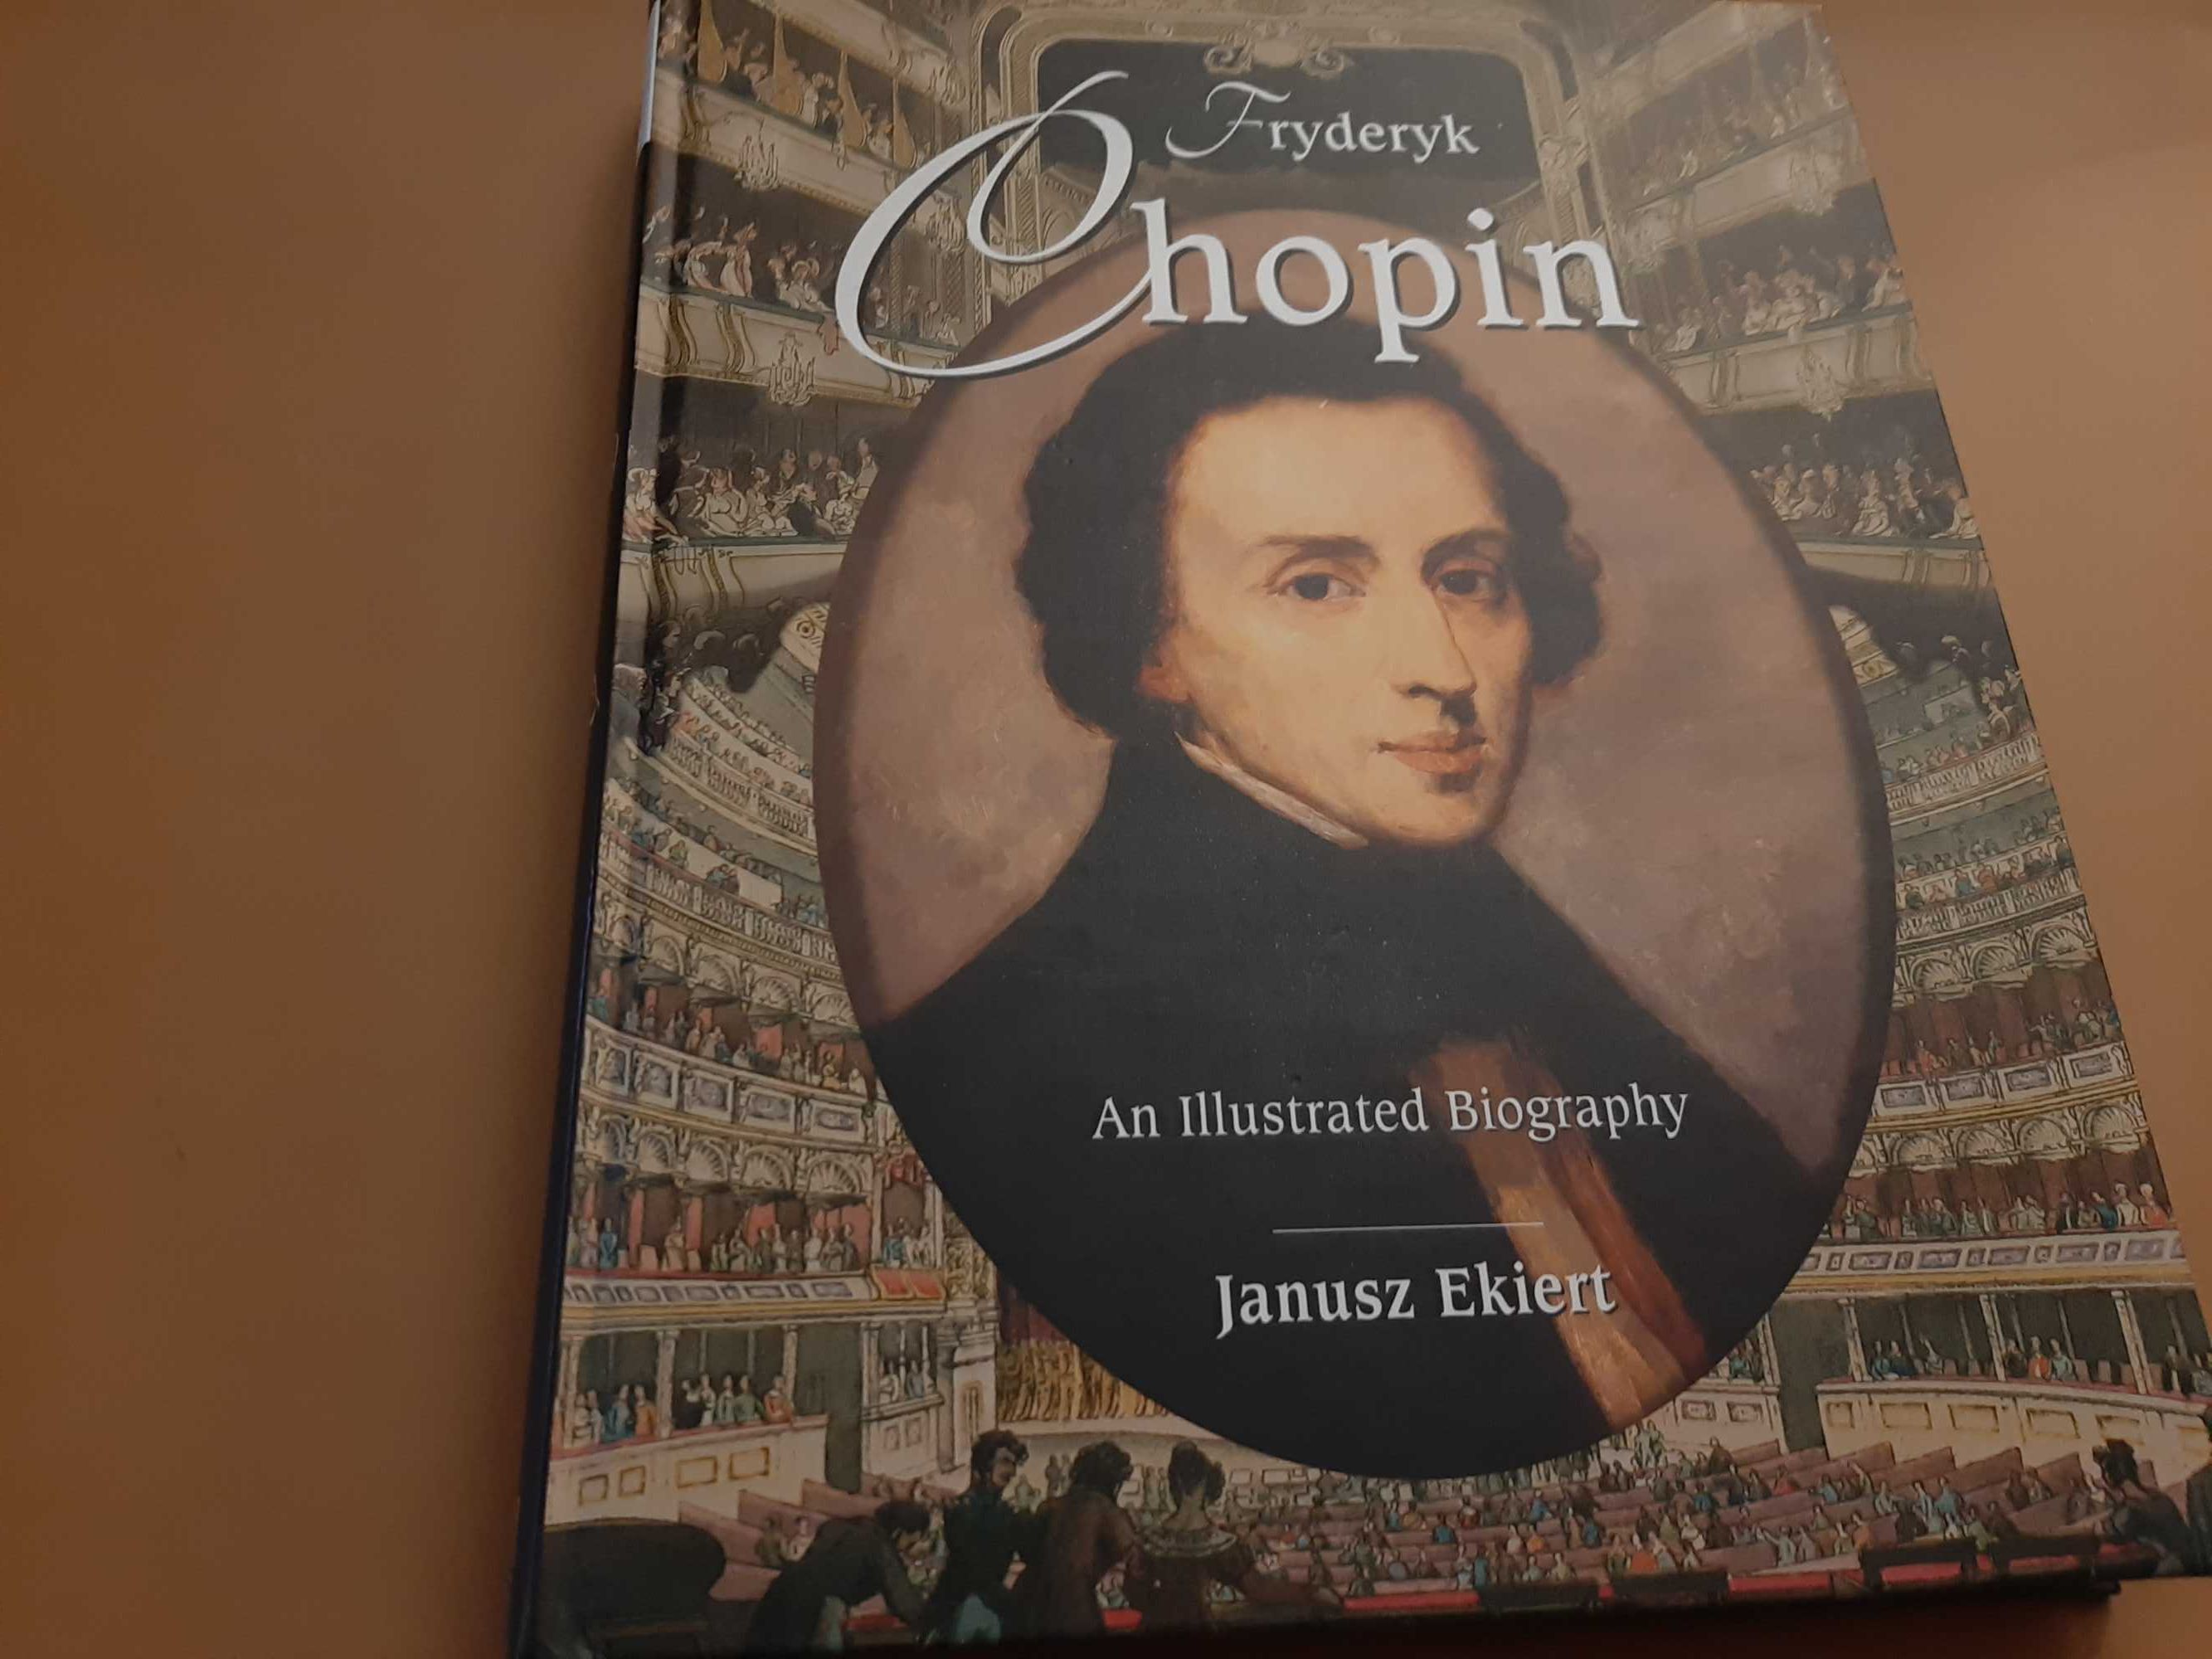 Fryderyk Chopin: An Illustrated Biography // Janusz Ekiert